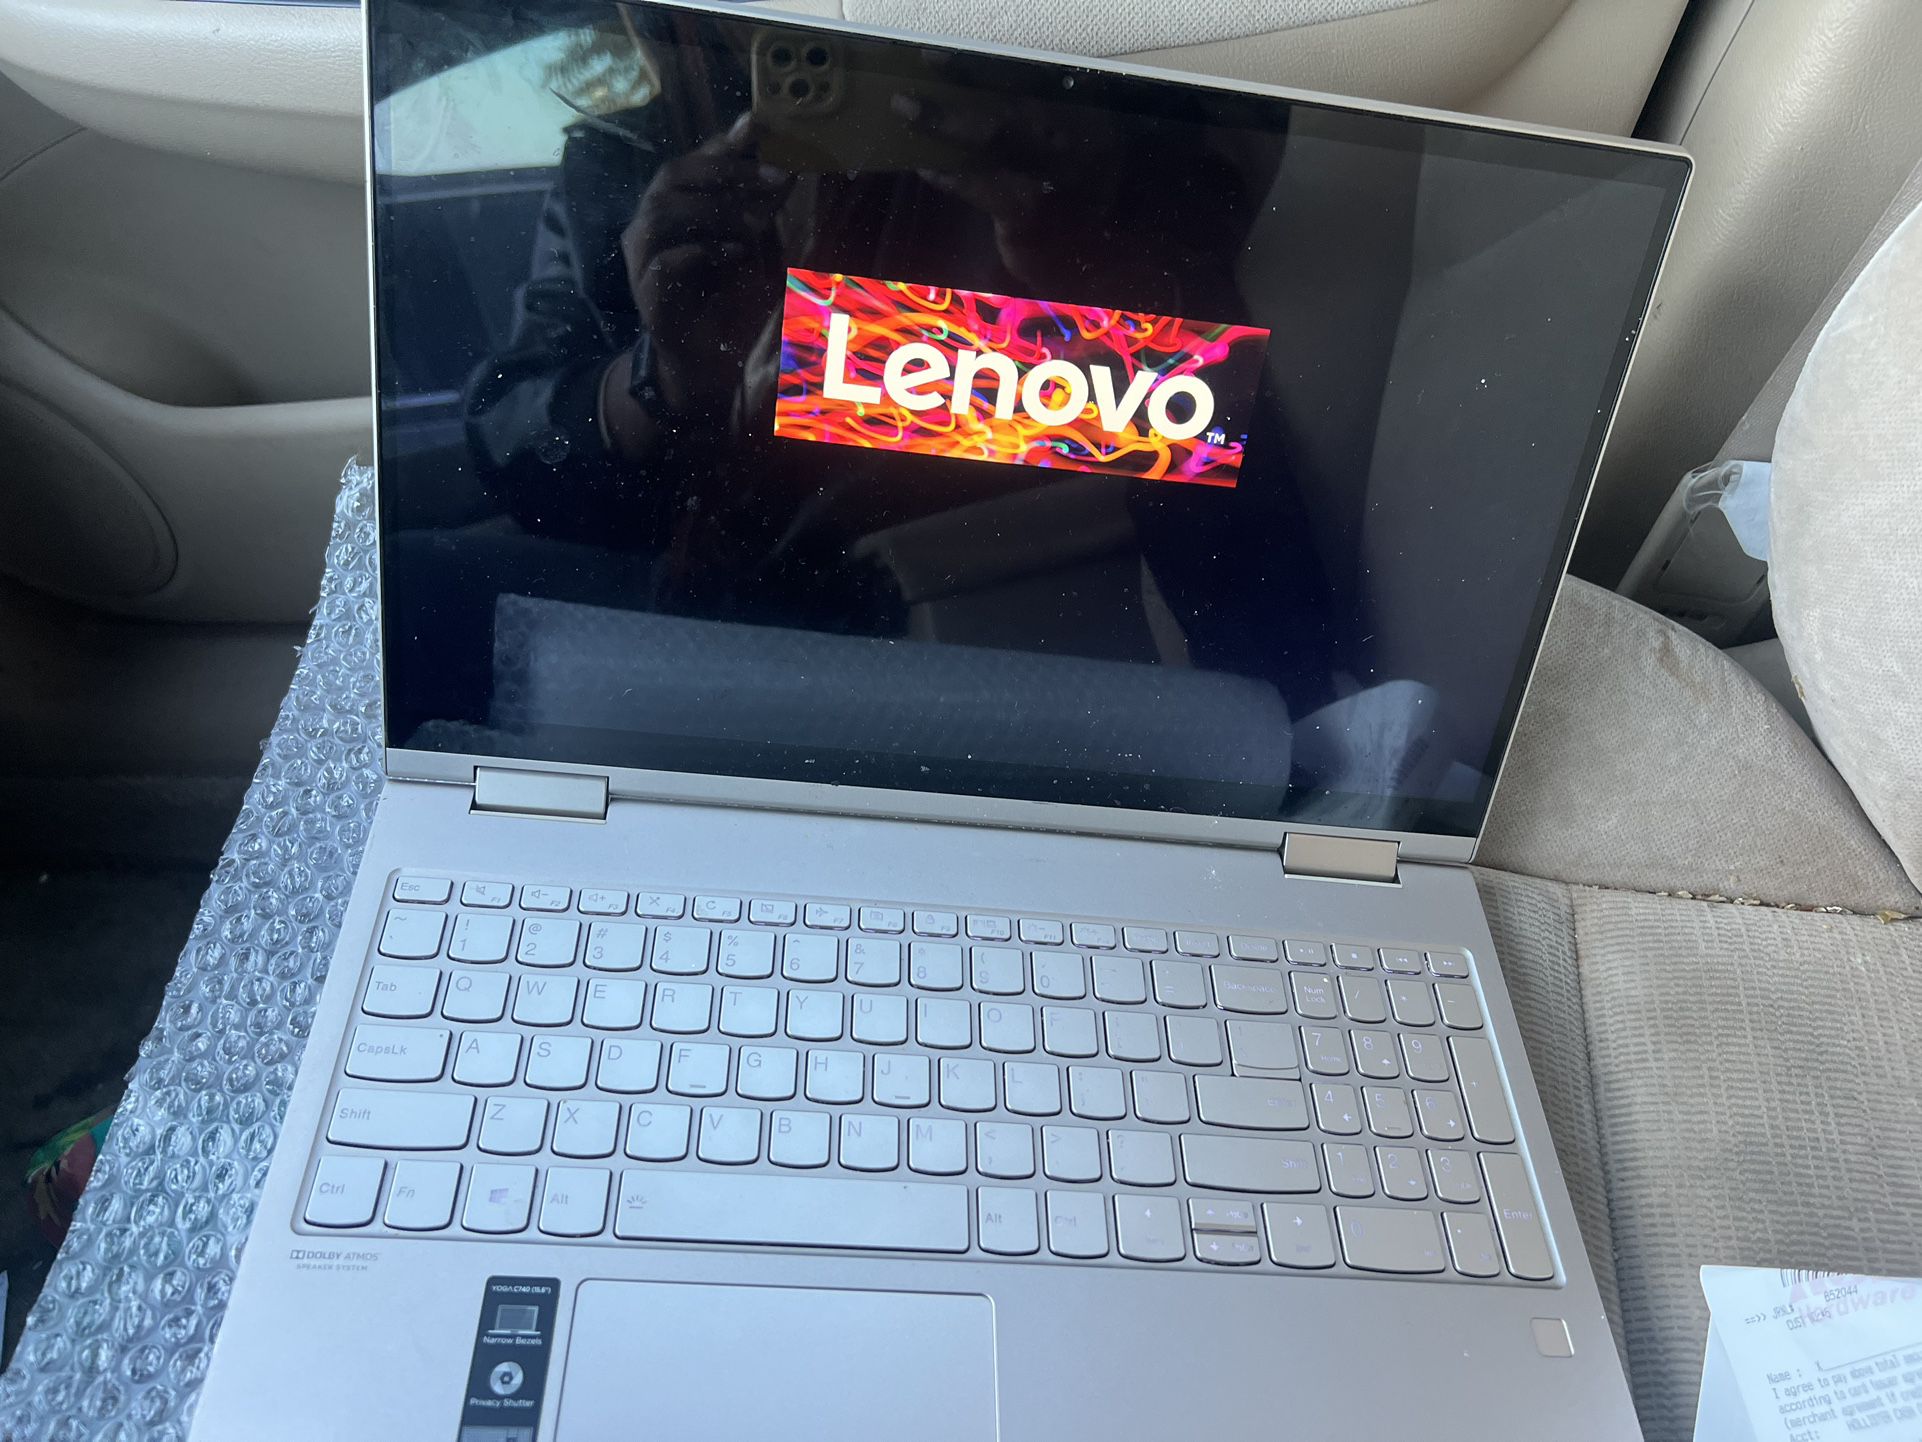 Lenovo 15.6 in Laptop/ Notebook 